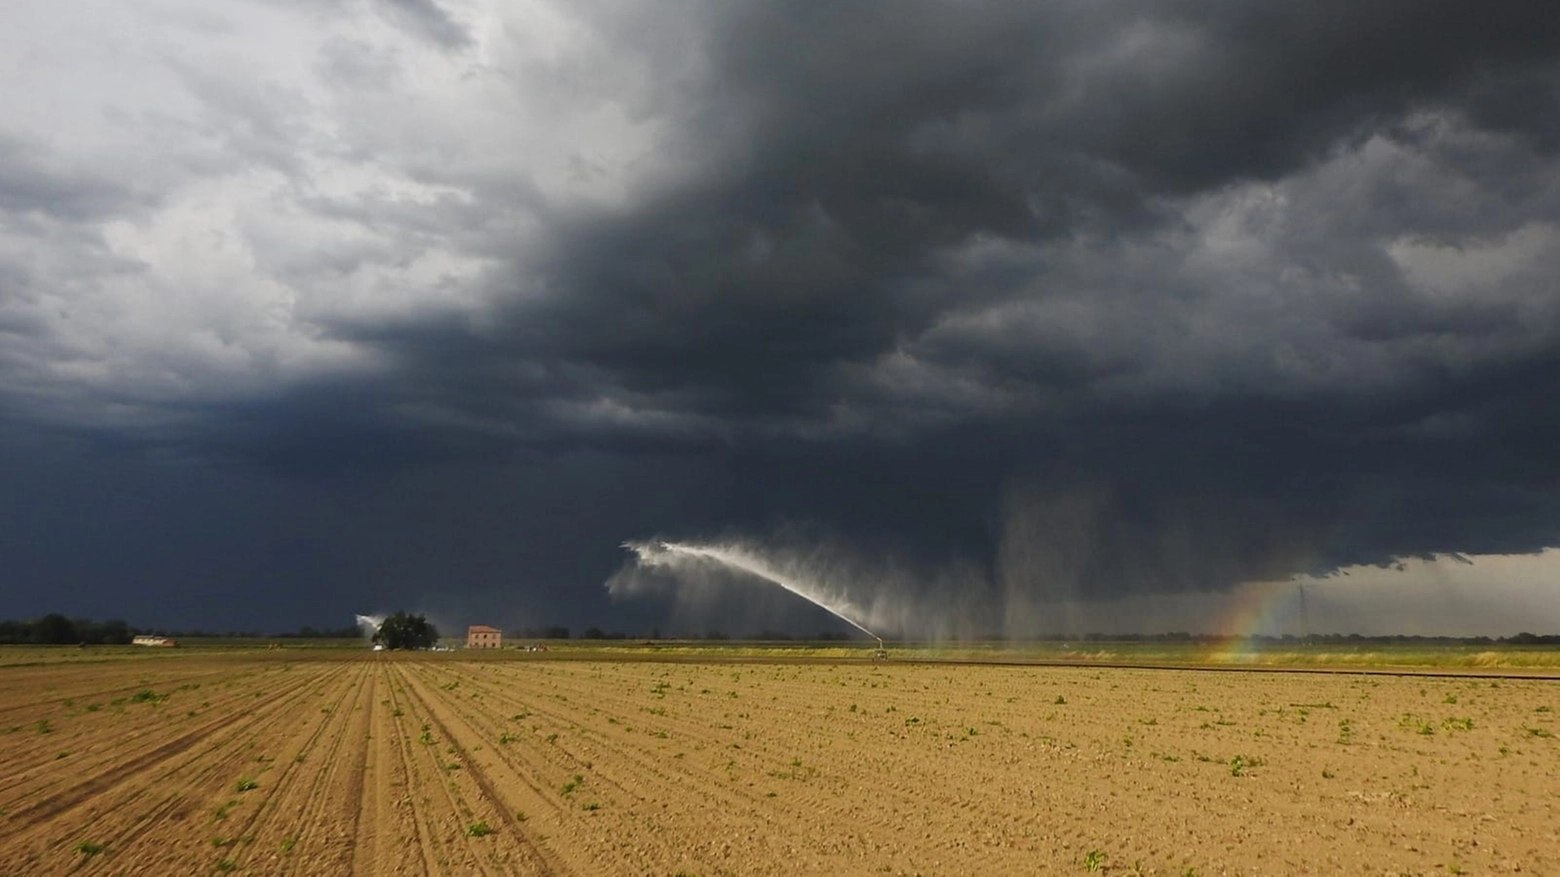 Maltempo in Emilia Romagna, temporali in arrivo nel weekend del 25-26 maggio. L'estate si fa ancora attendere (foto di Luigi Scardovi)